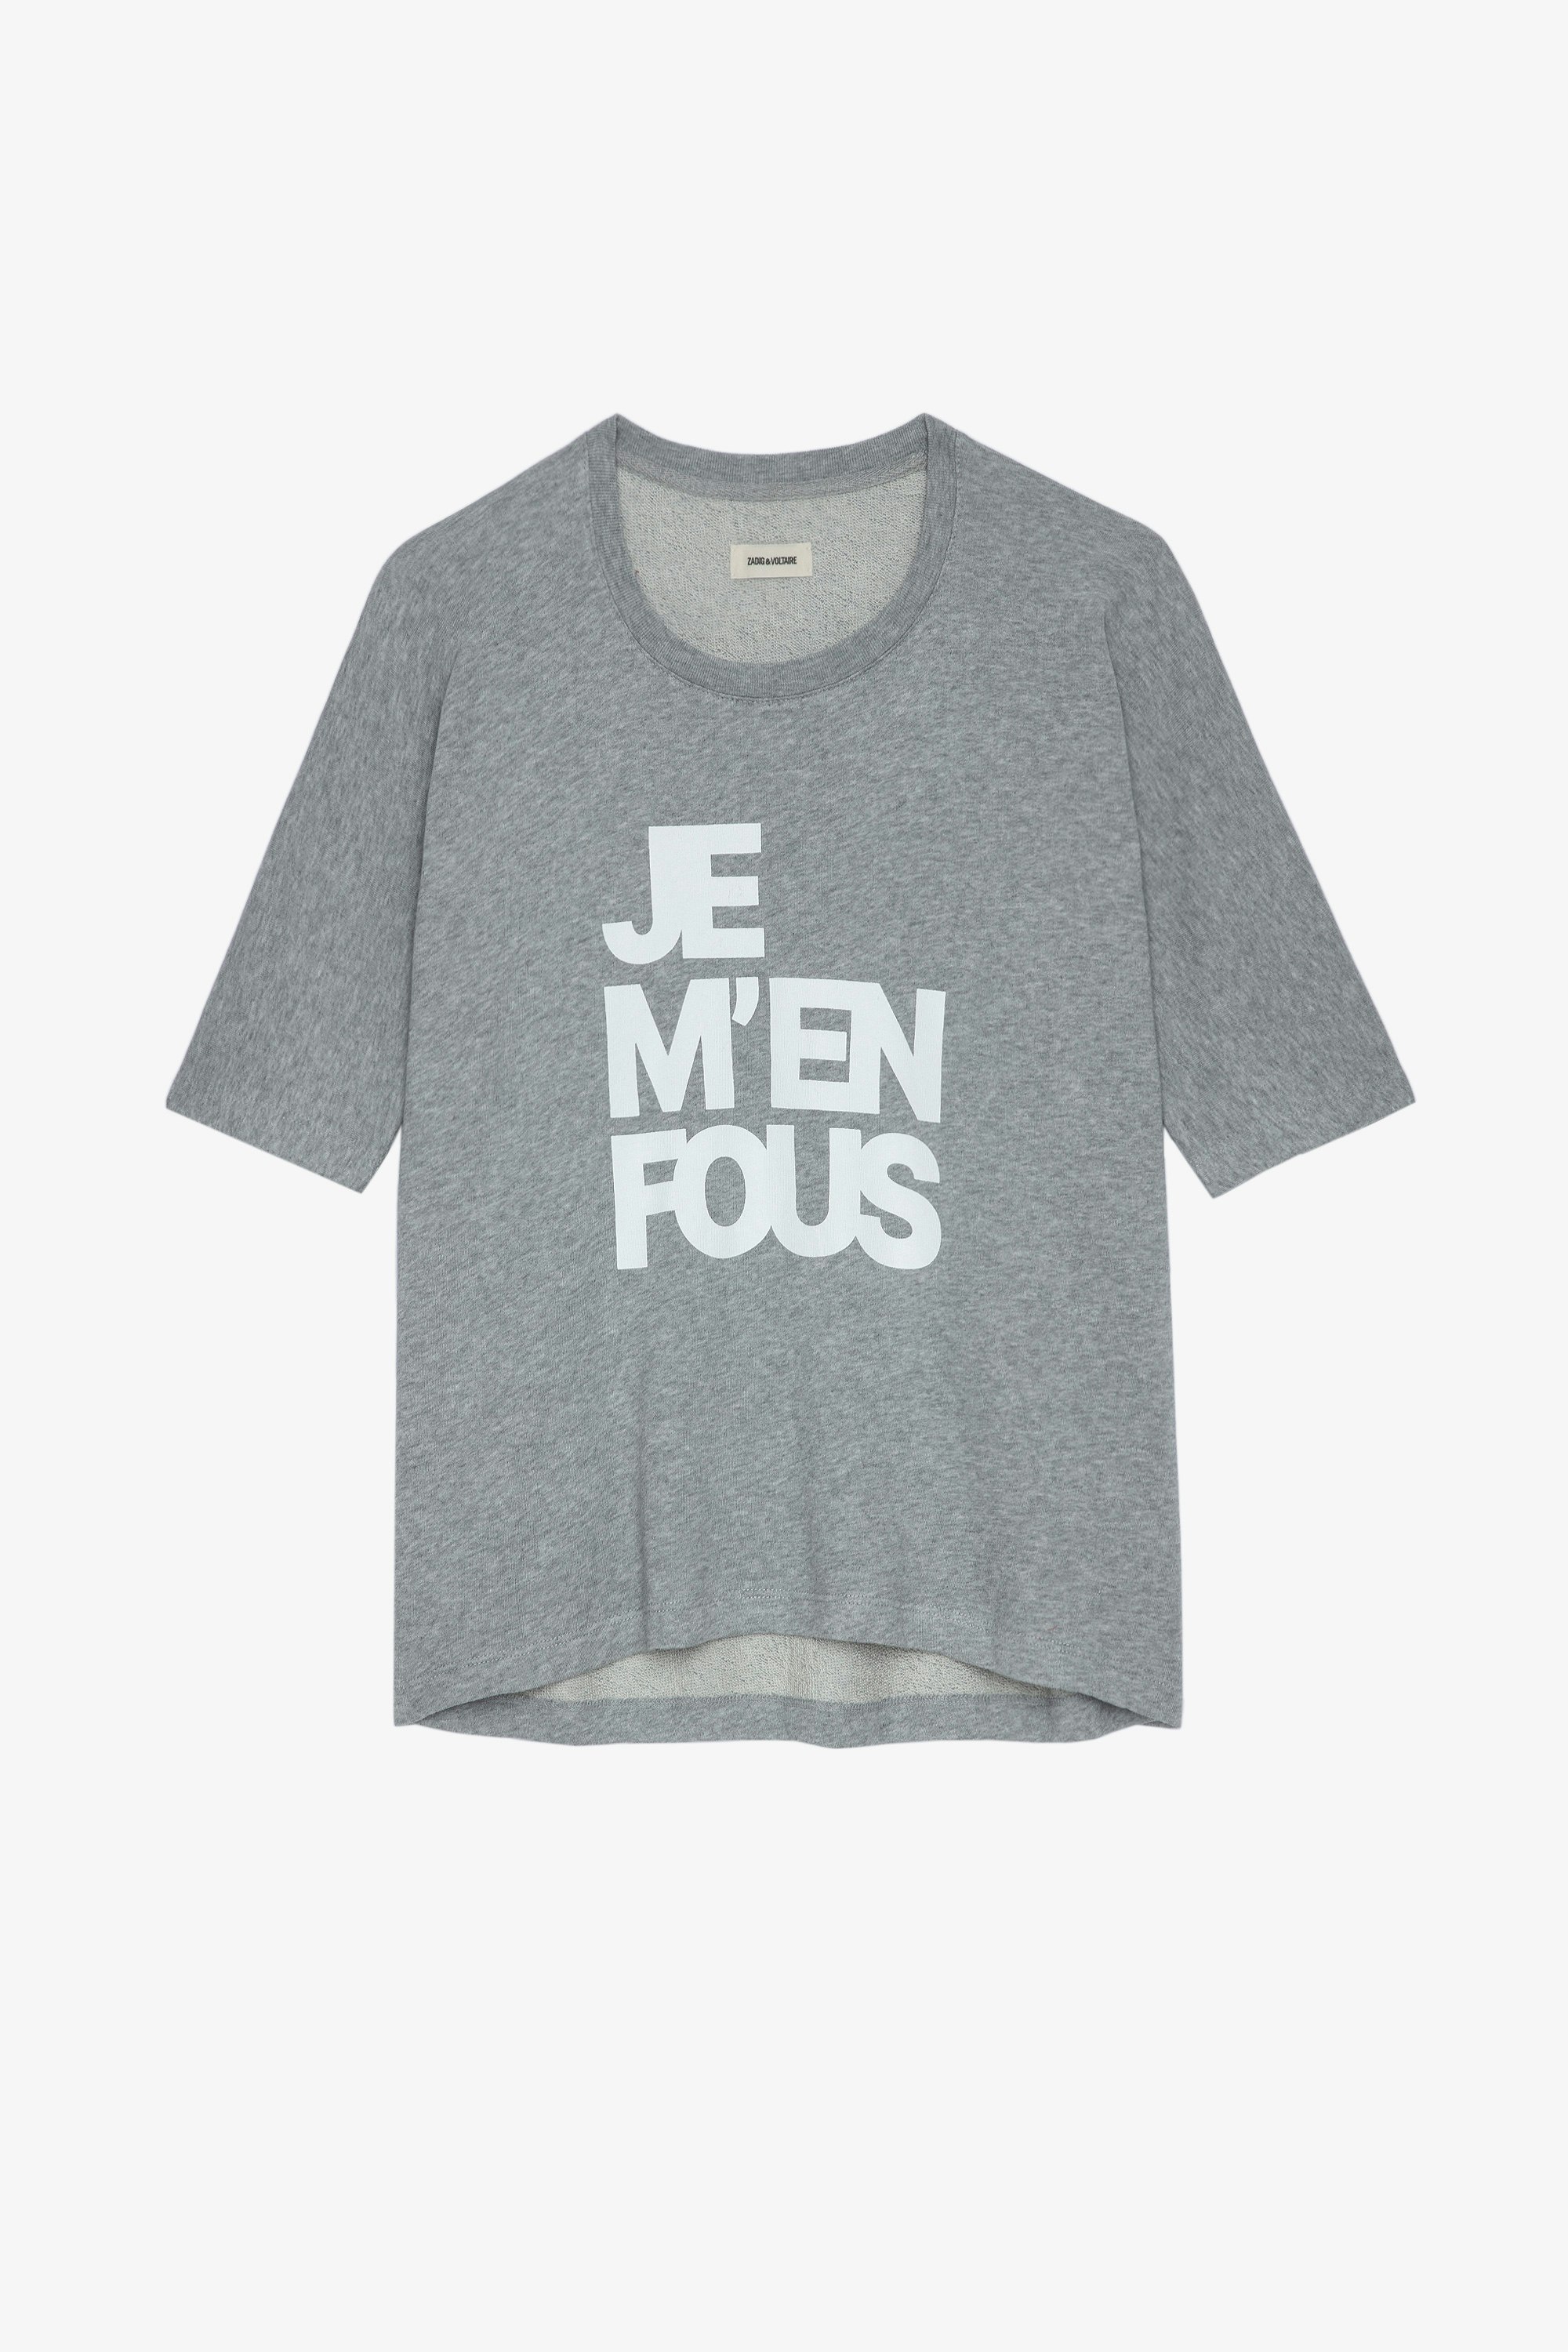 Sweatshirt Portland JMF Sweatshirt en coton gris chiné à message "Je m'en fous" femme